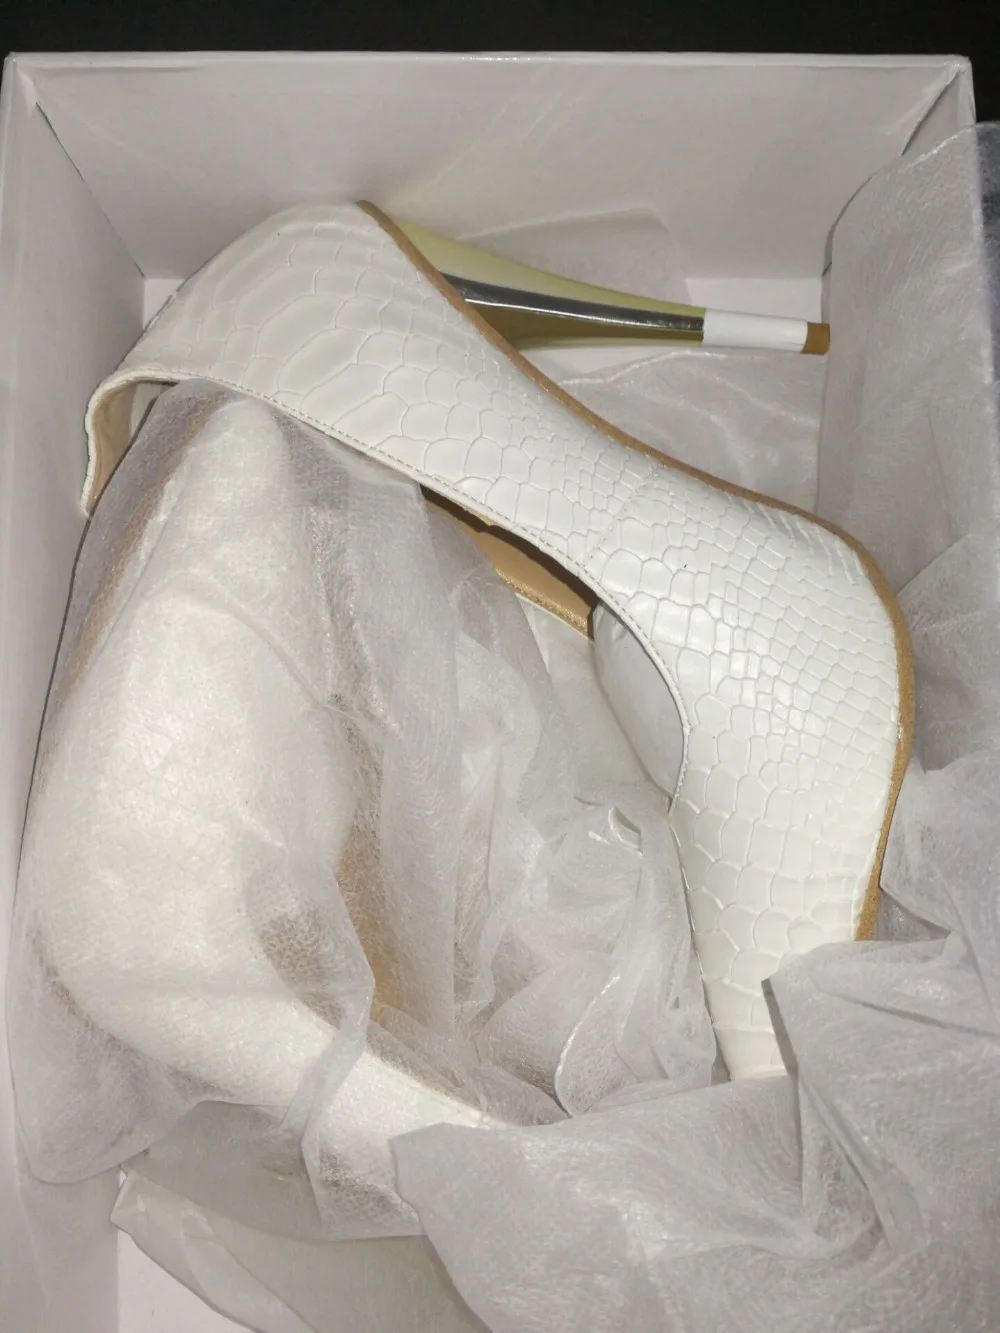 Escarpins femme/белые туфли-лодочки с острым носком из тисненой кожи; женская обувь на высоком каблуке с золотой молнией; пикантные свадебные туфли на шпильке